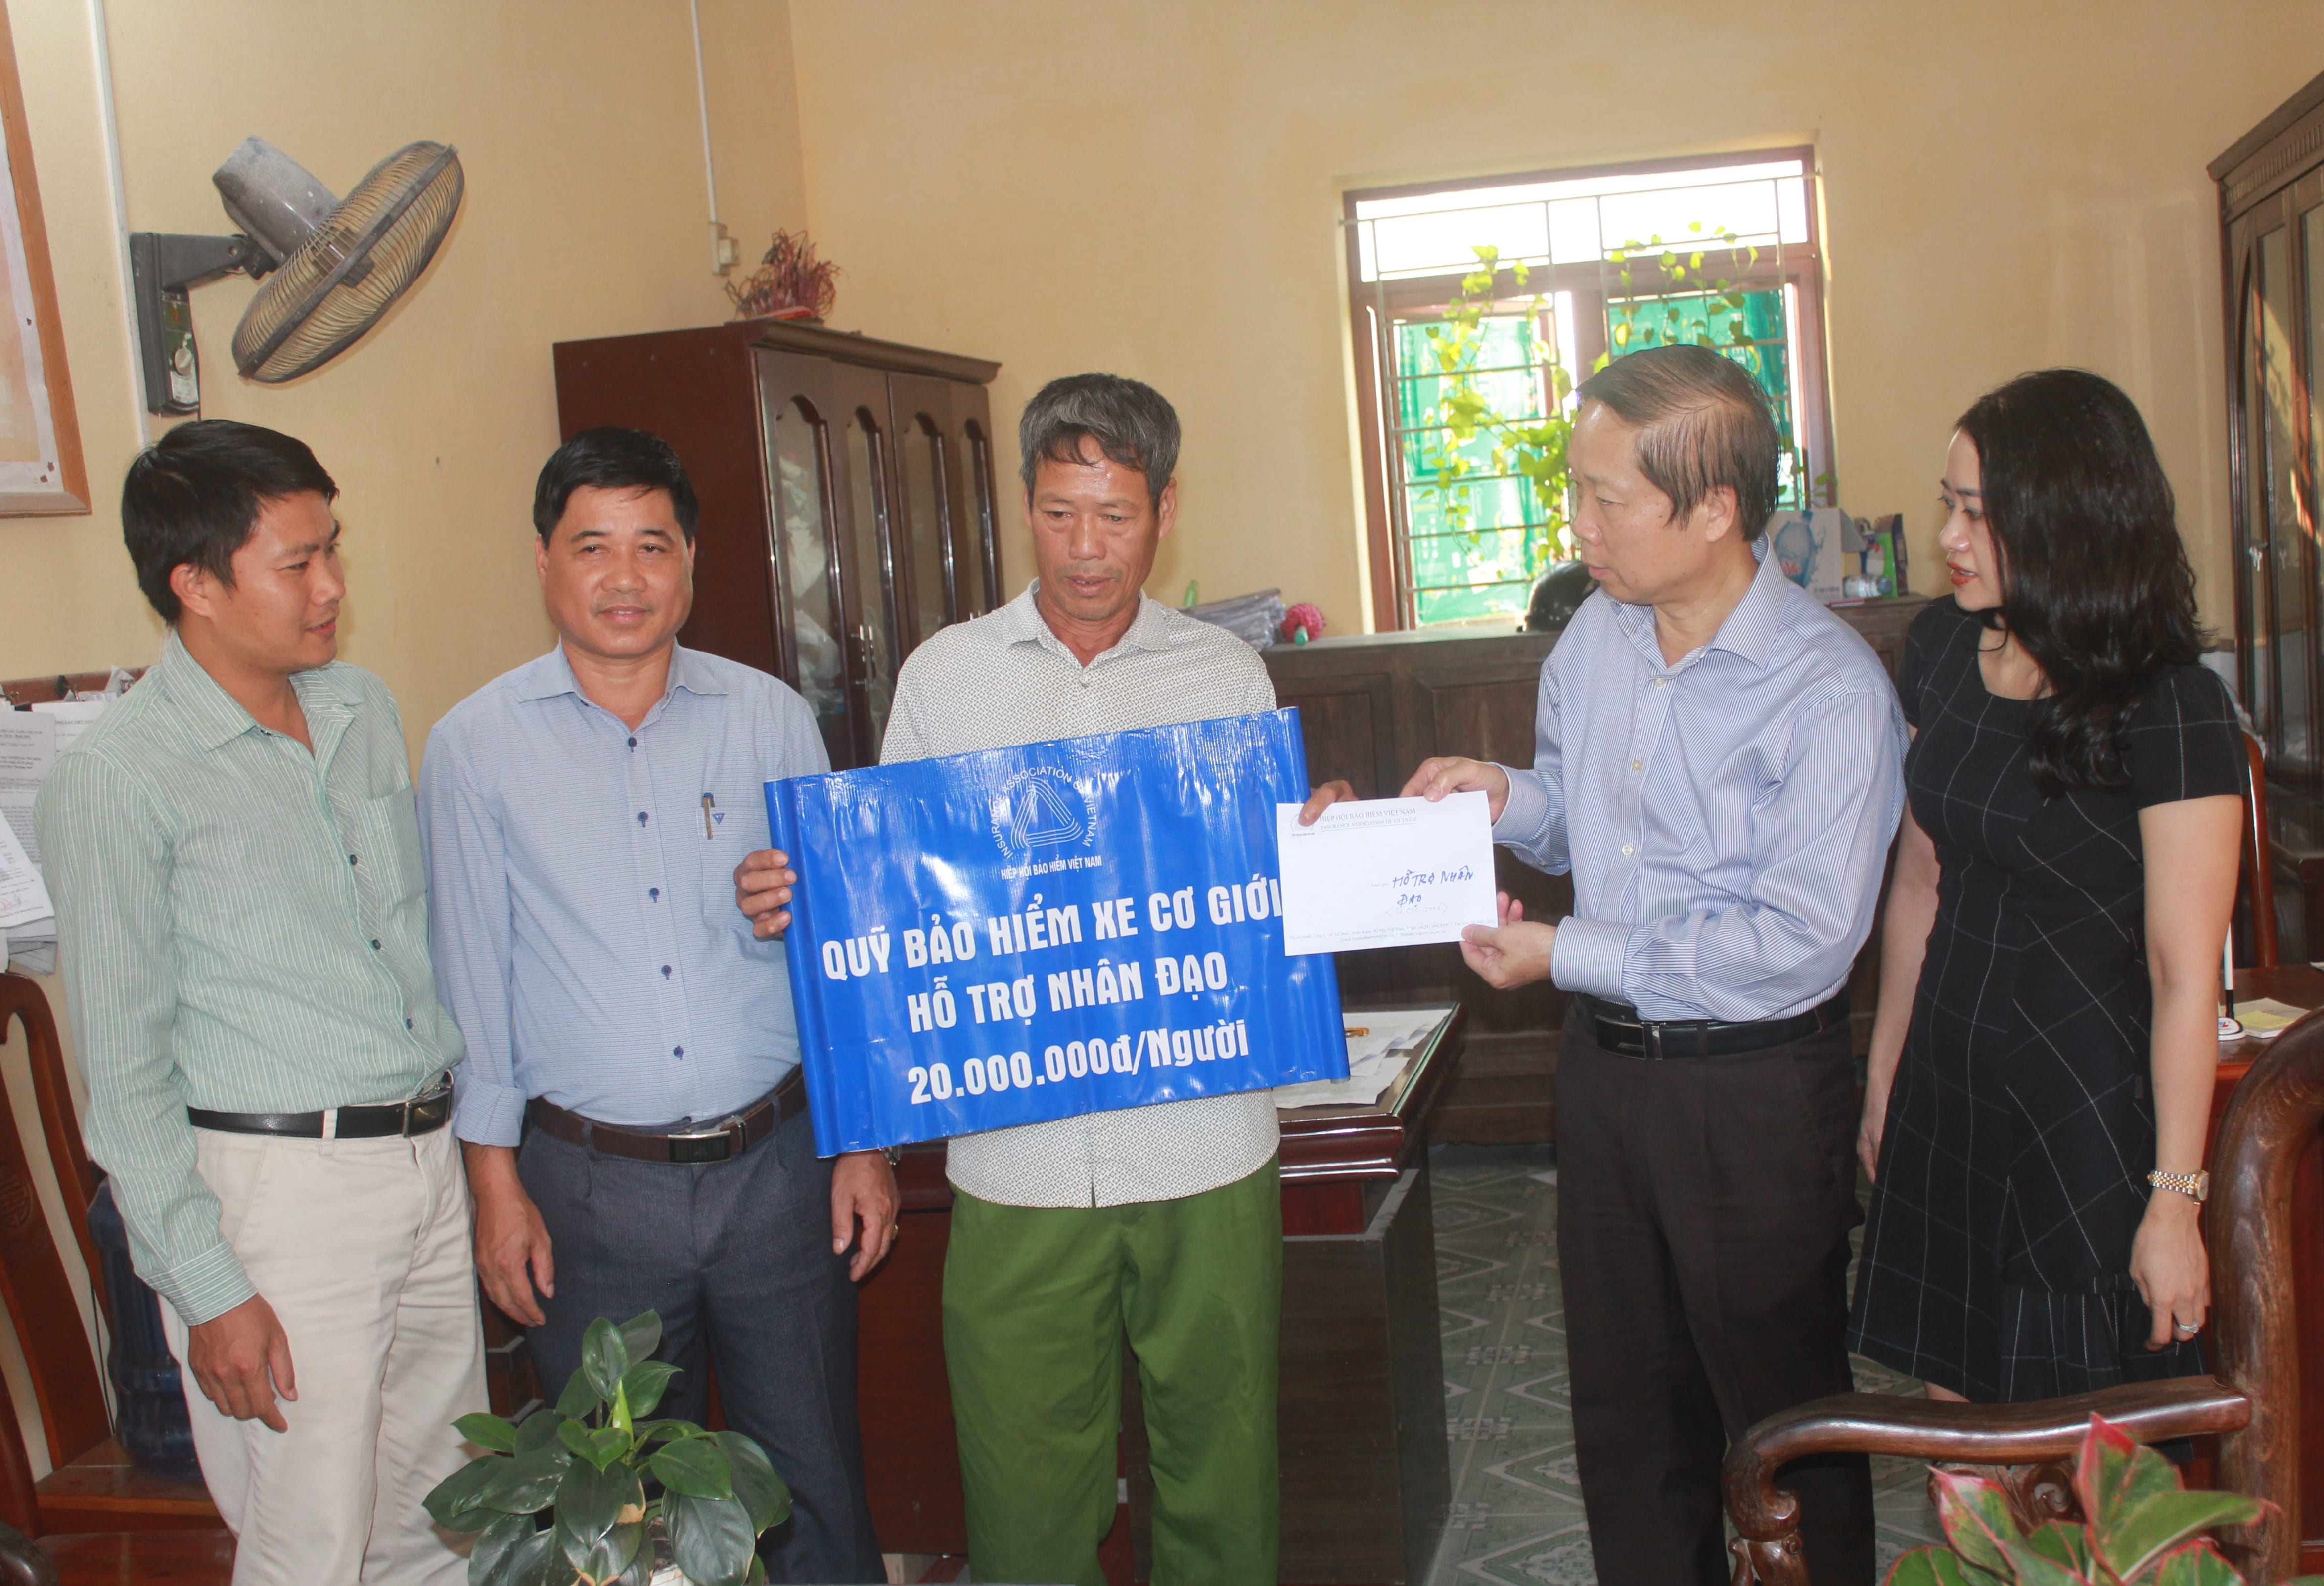 Quỹ Bảo hiểm xe cơ giới – Hiệp hội Bảo hiểm Việt Nam hỗ trợ nhân đạo tại Hải Dương